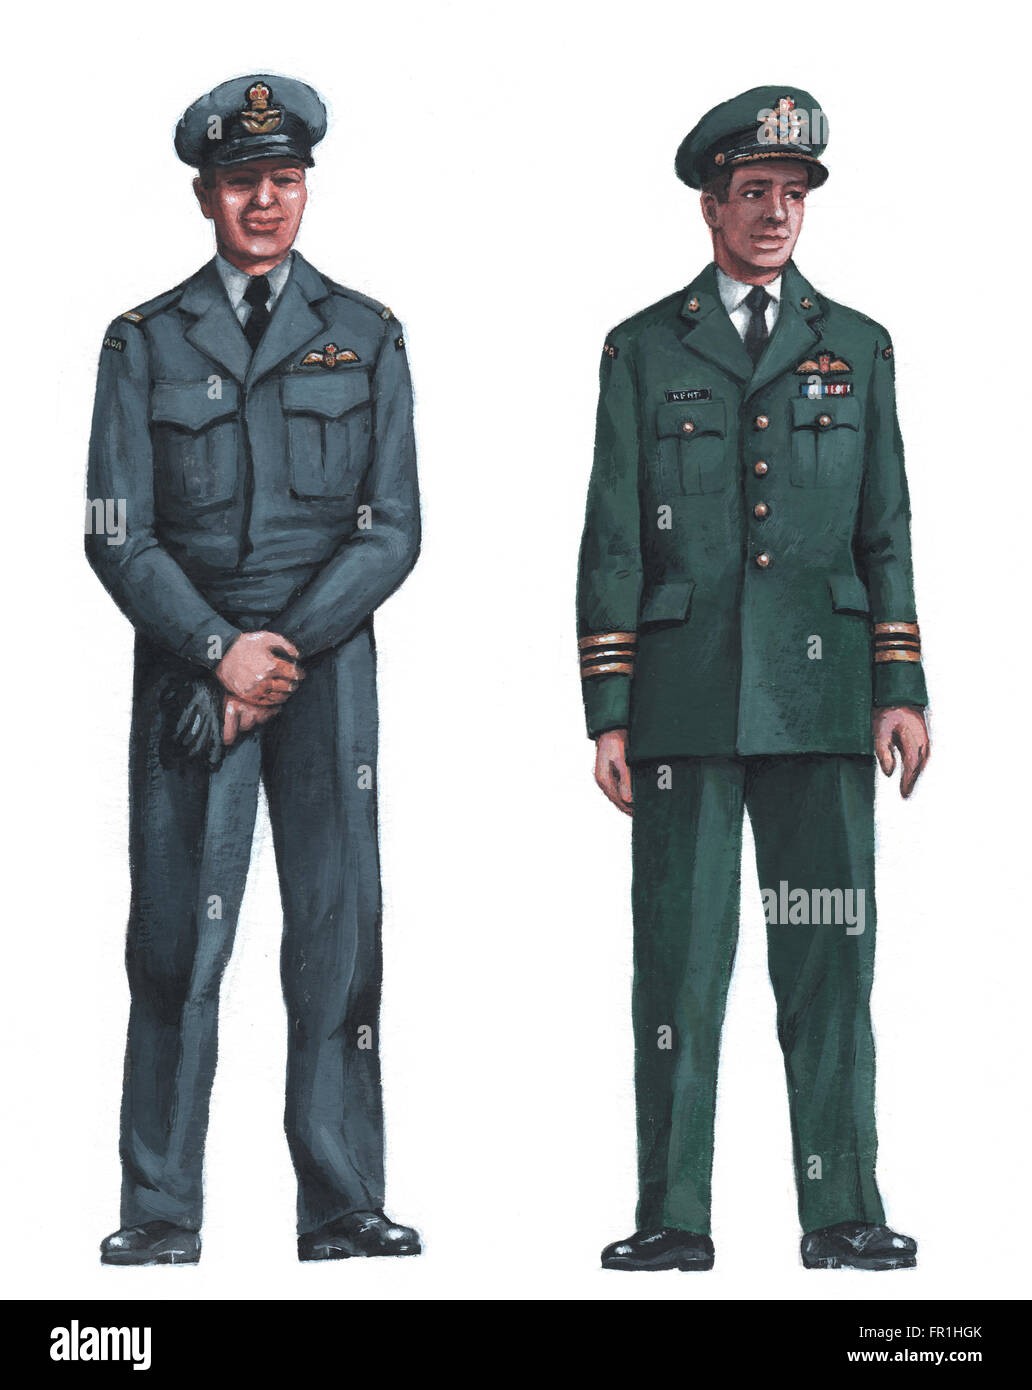 Ilustración de uniformes canadiense por Bohdan Wroblewski Foto de stock